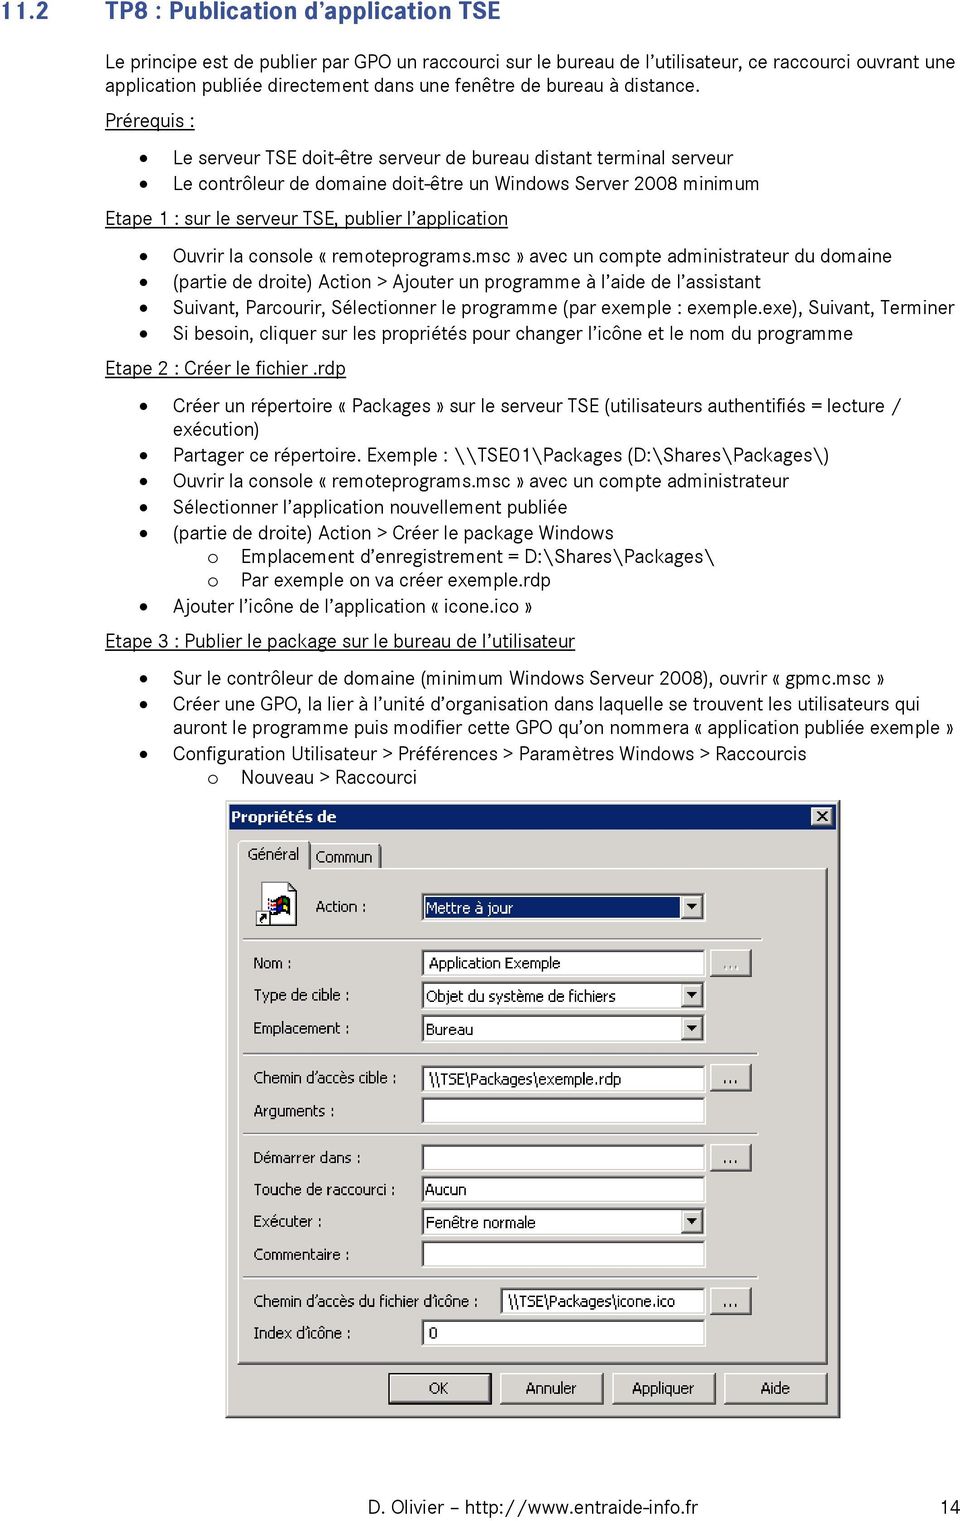 Prérequis : Le serveur TSE doit-être serveur de bureau distant terminal serveur Le contrôleur de domaine doit-être un Windows Server 2008 minimum Etape 1 : sur le serveur TSE, publier l application